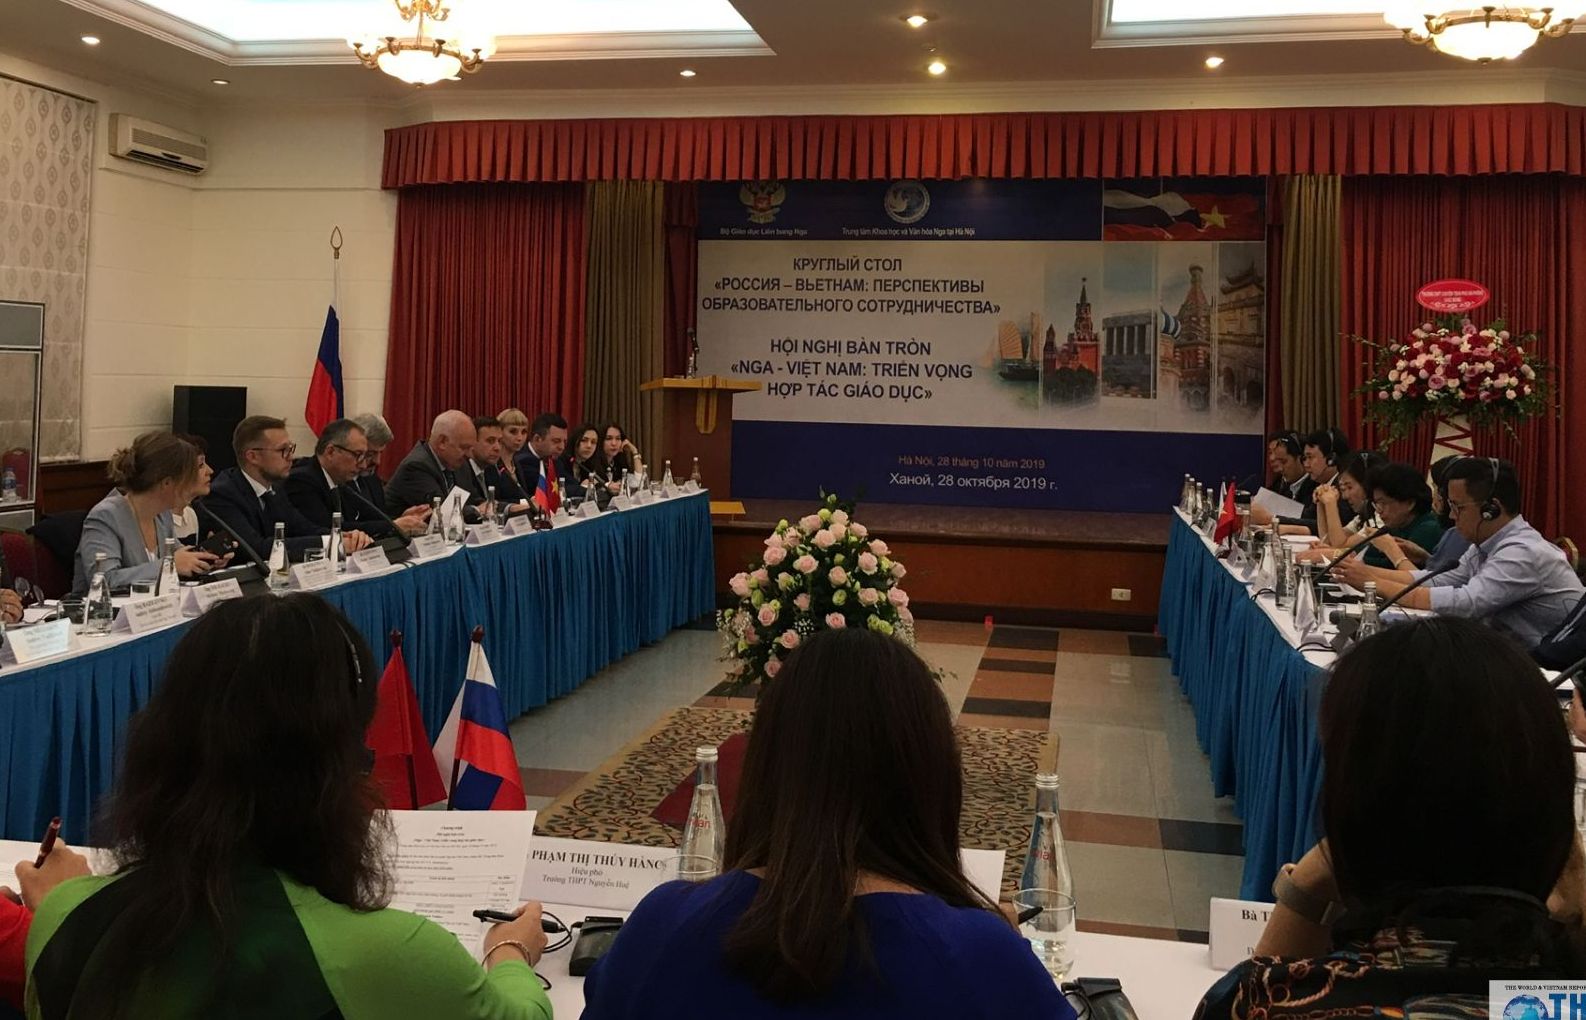 Hội nghị bàn tròn về triển vọng hợp tác giáo dục Nga - Việt Nam